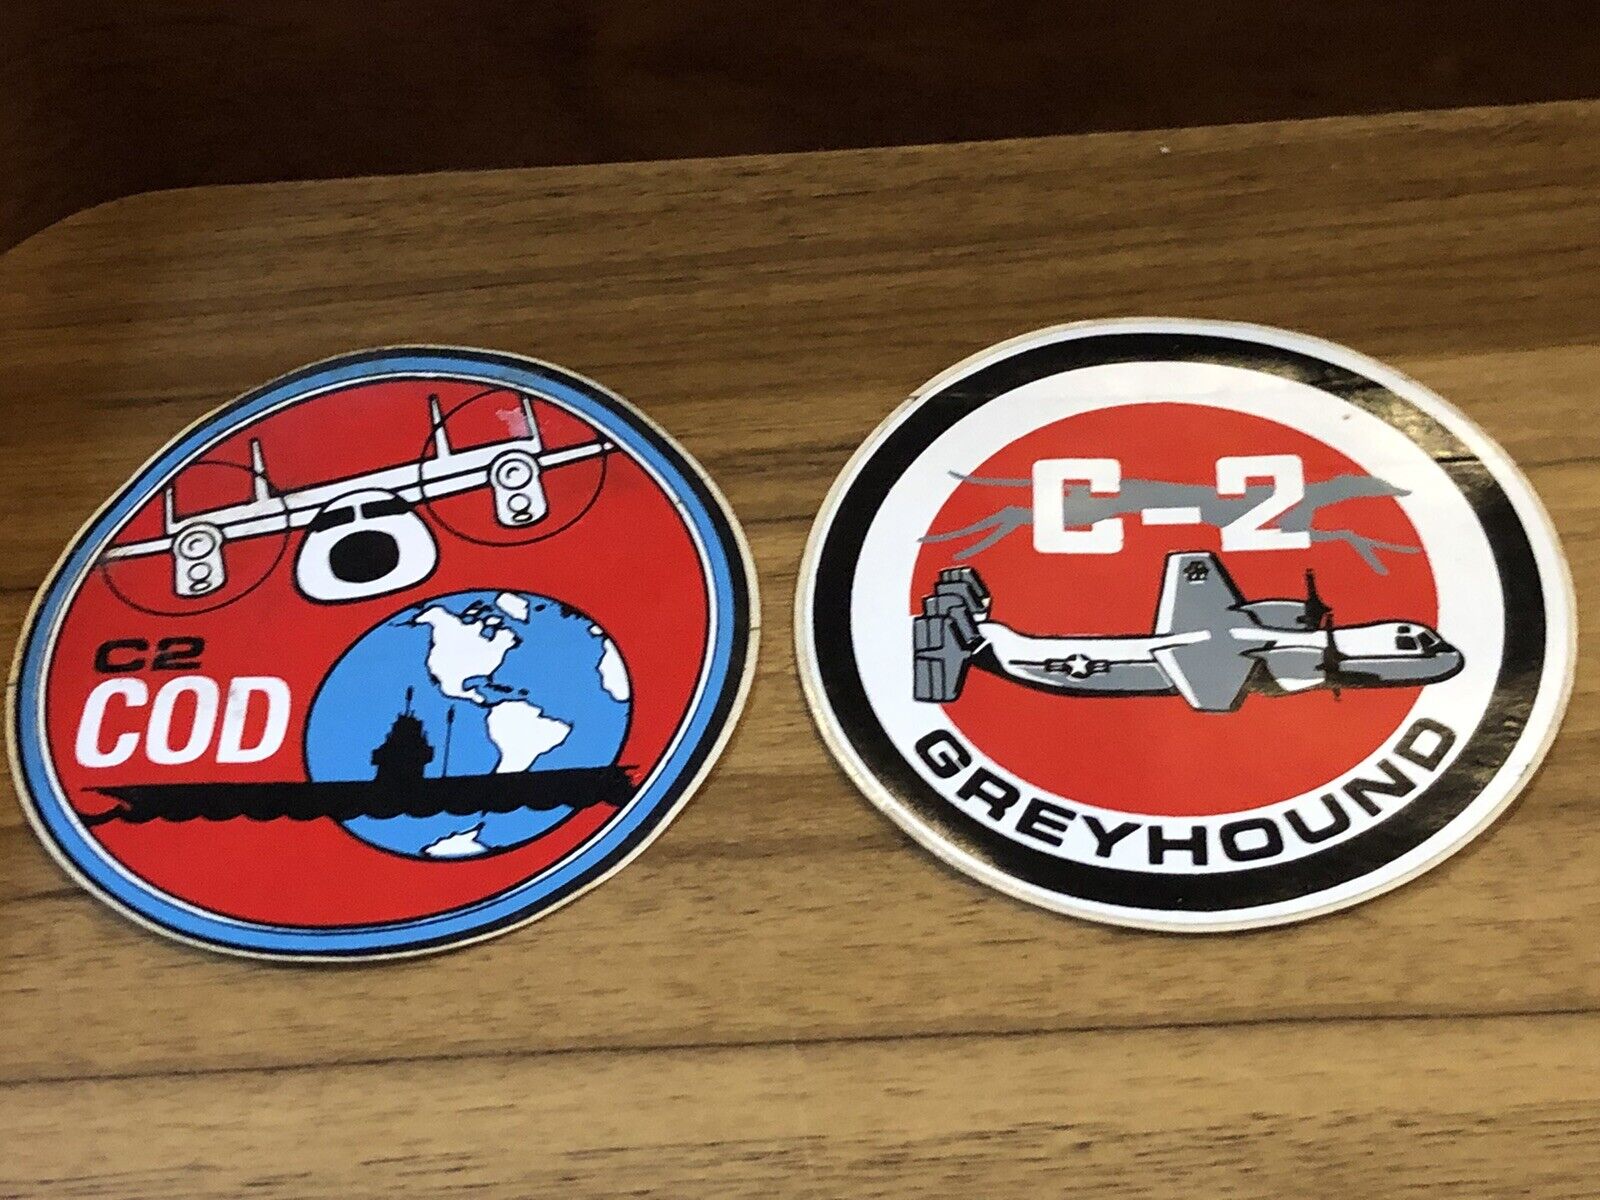 2 Vintage Grumman Aerospace Sticker C-2 COD Greyhound